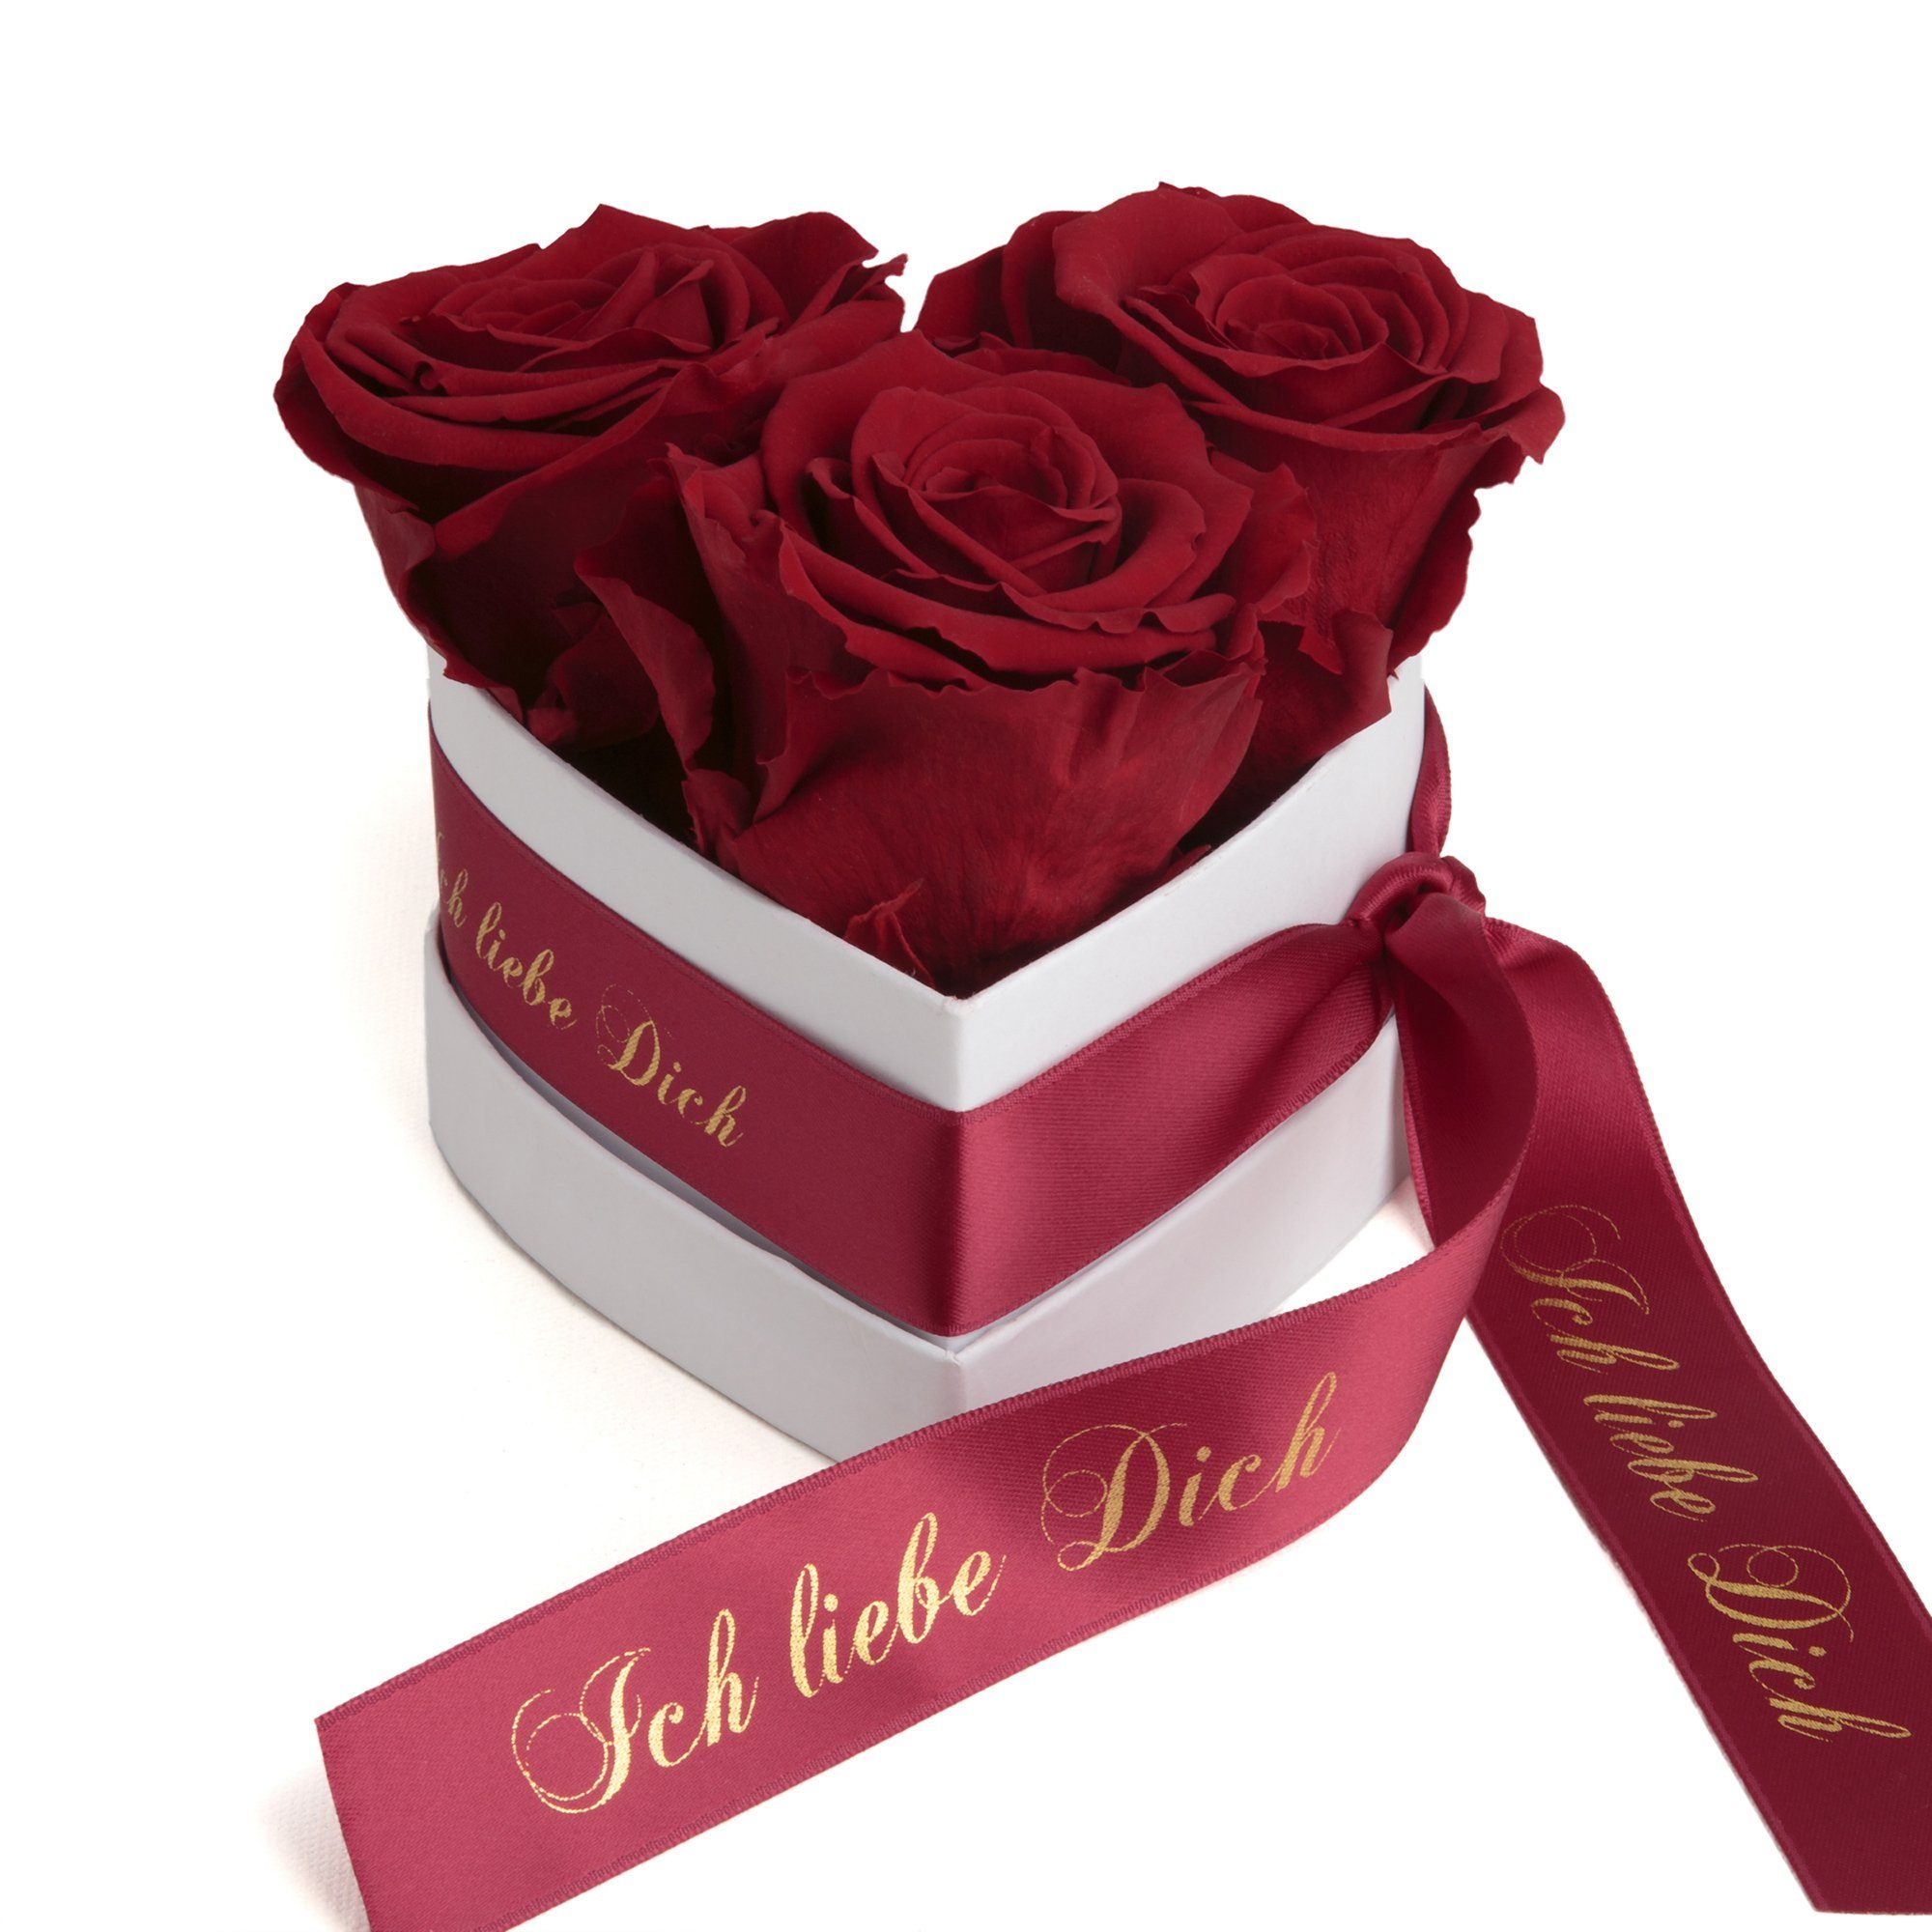 LUXUS Herz Rosen Box konservierte echte Rose MIT GRAVUR Valentinstag Geschenk 